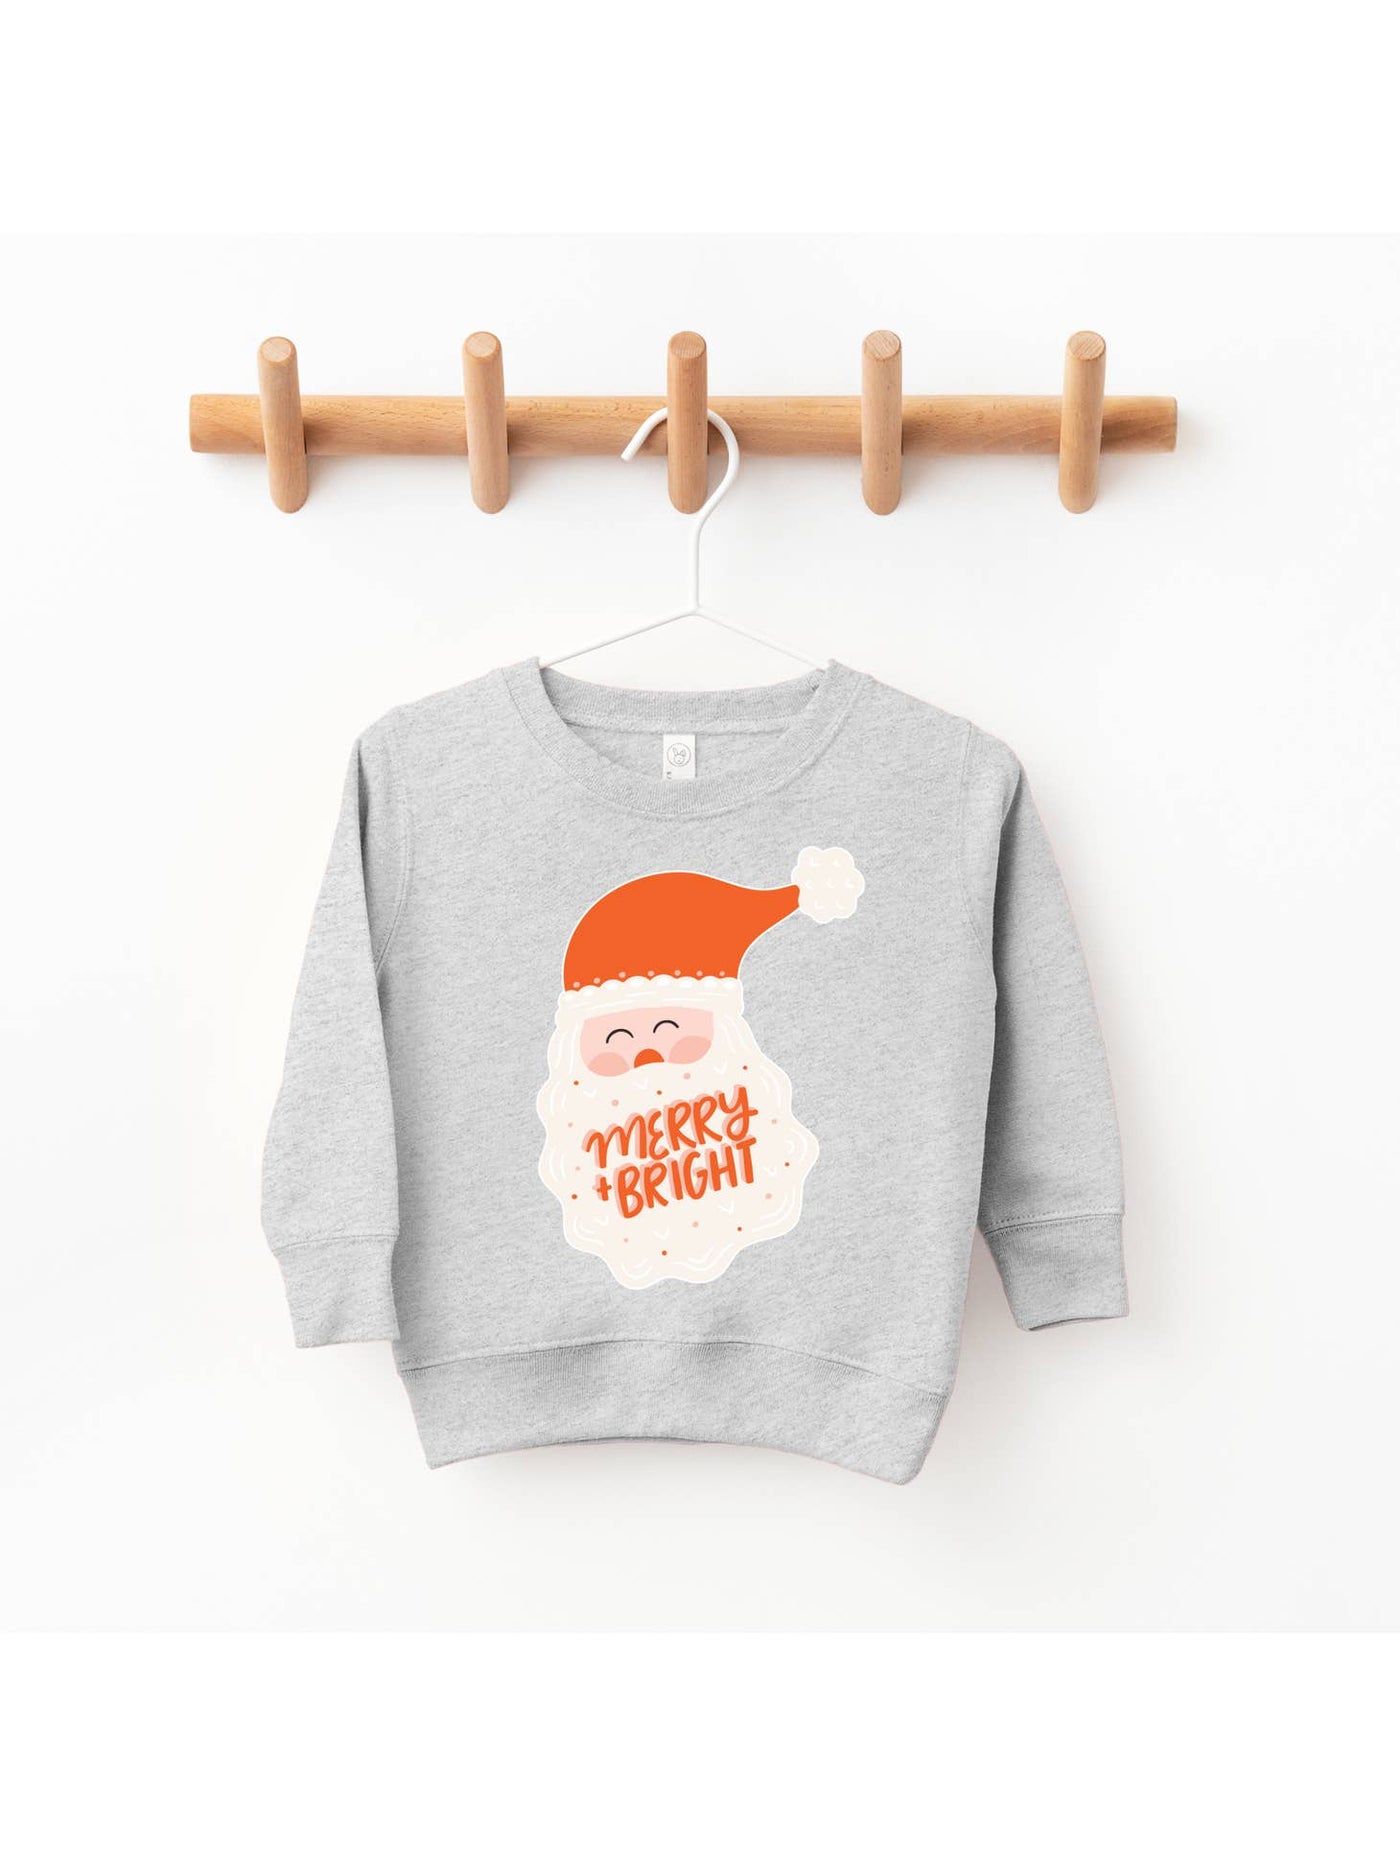 Merry and Bright Sweatshirt